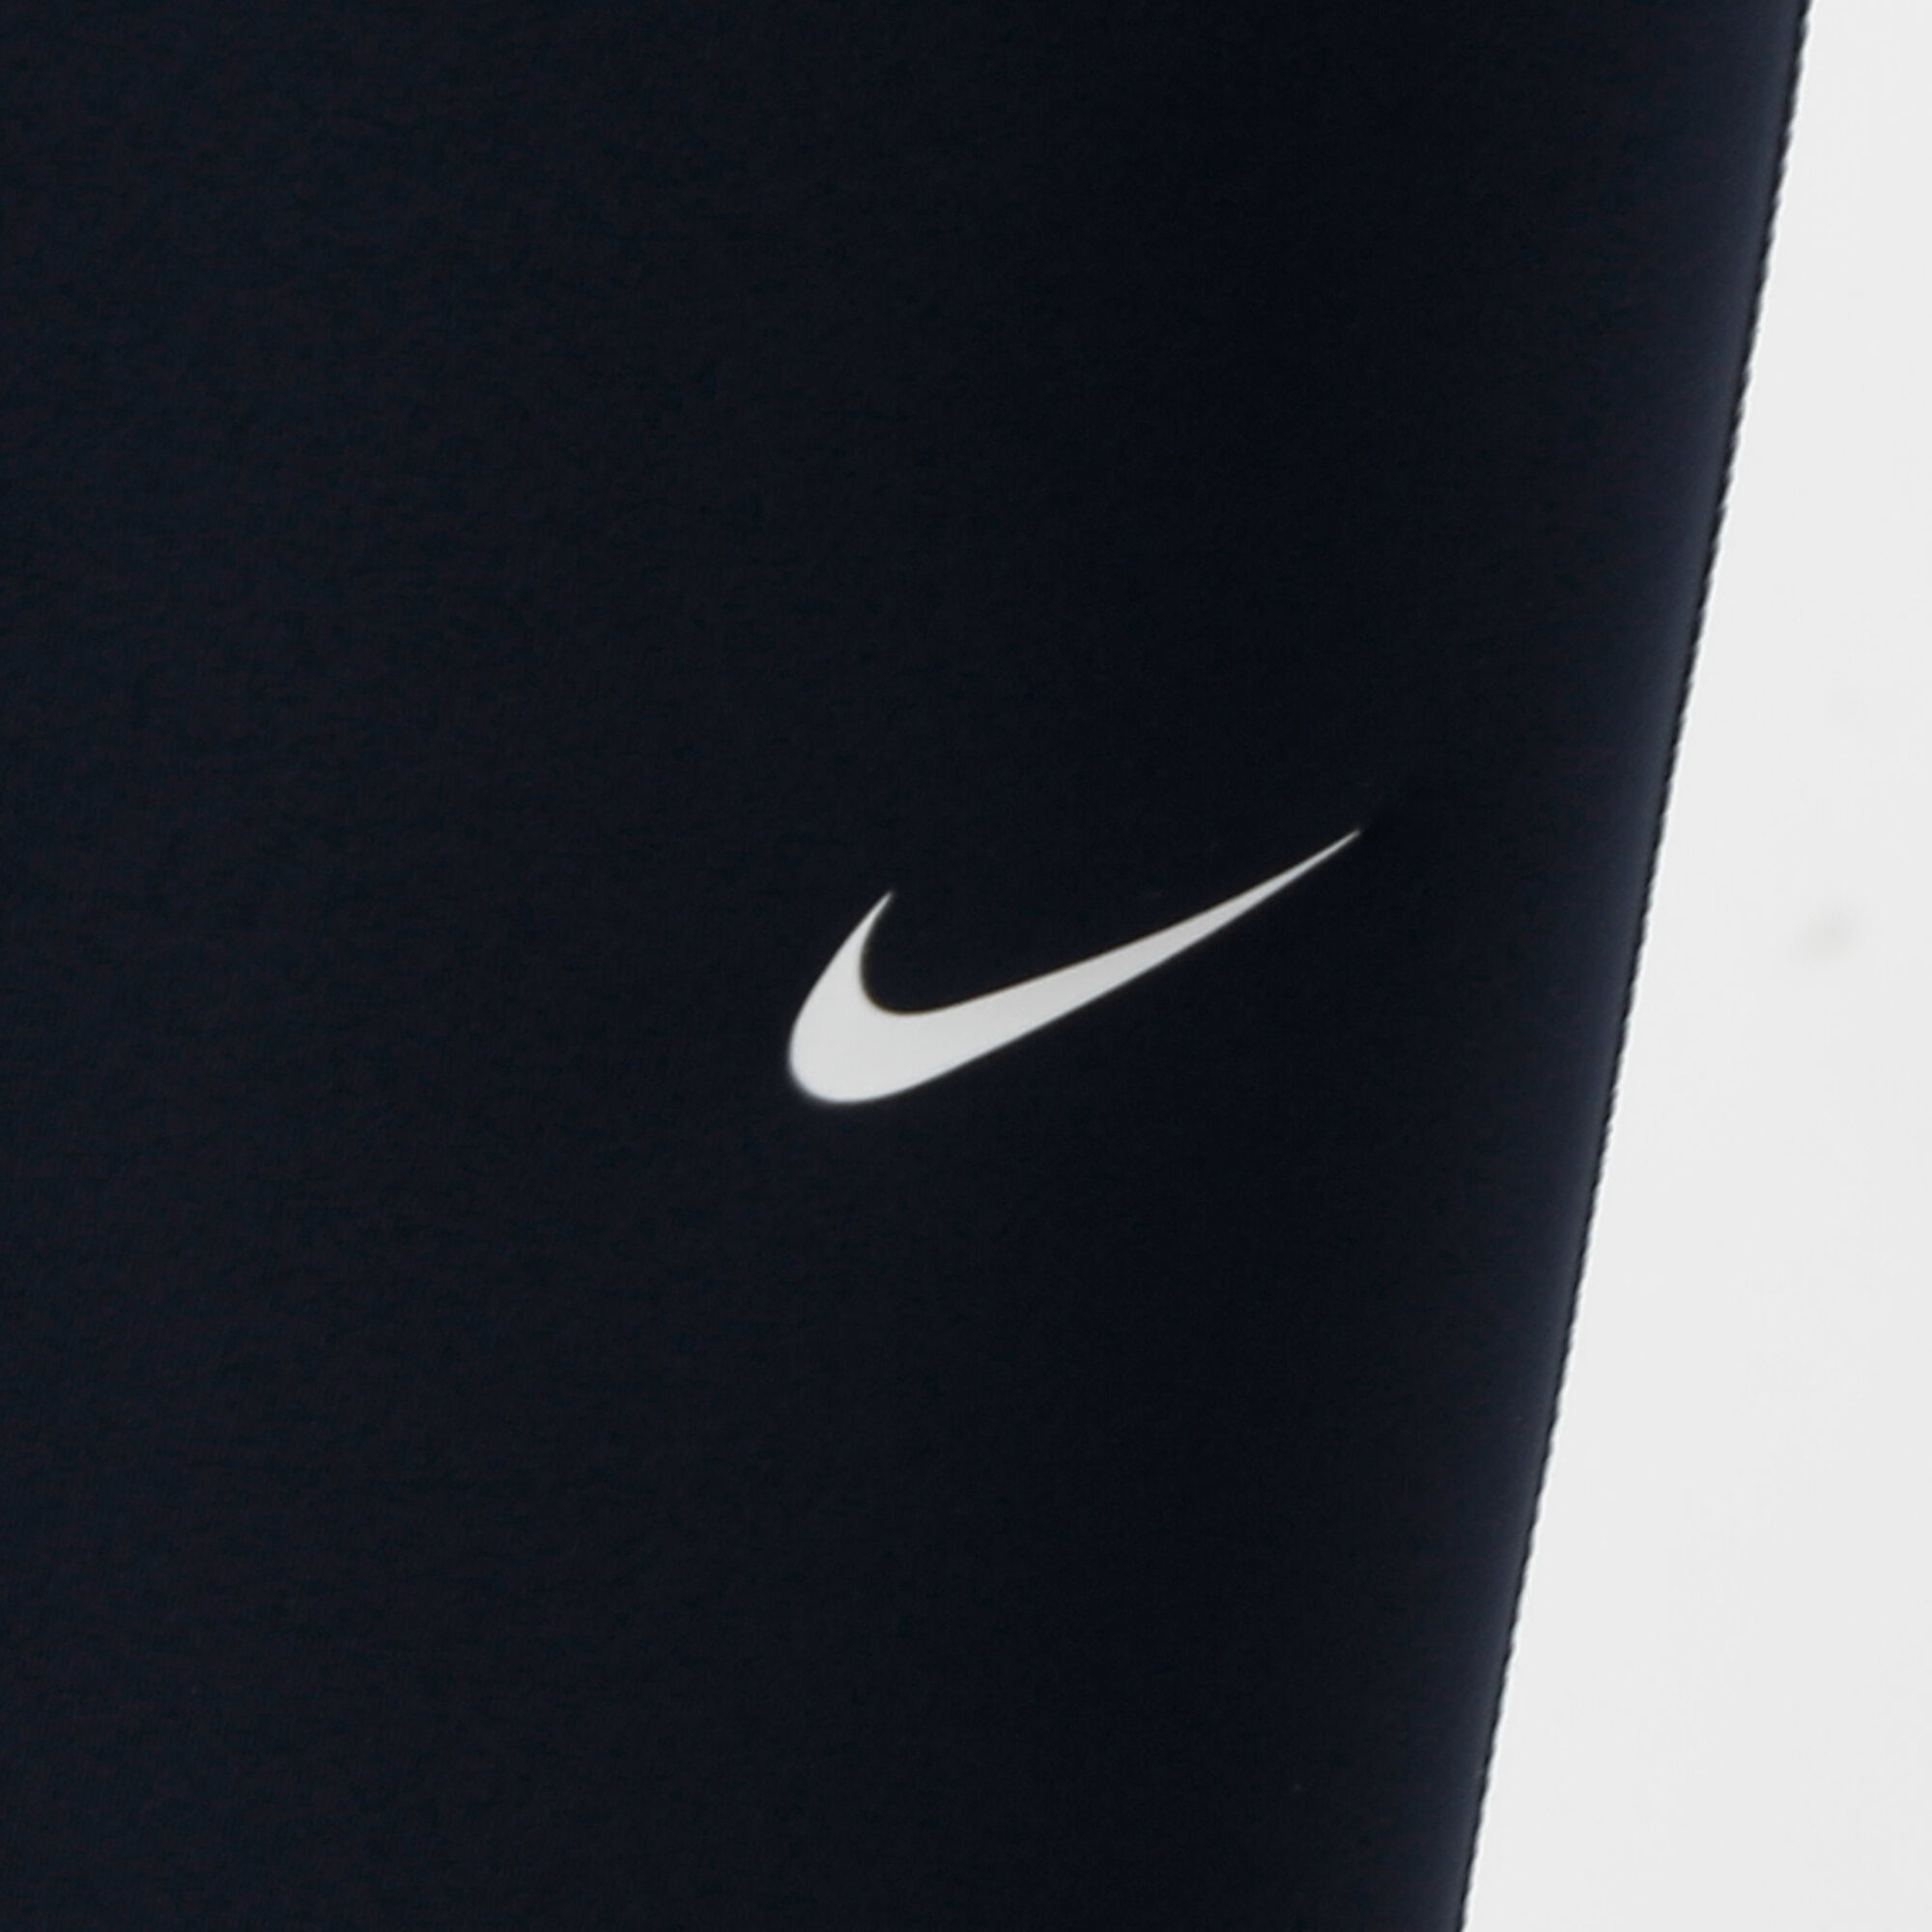 Nike Pro Tights 365 - Valerian Blau/Schwarz/Weiß Damen